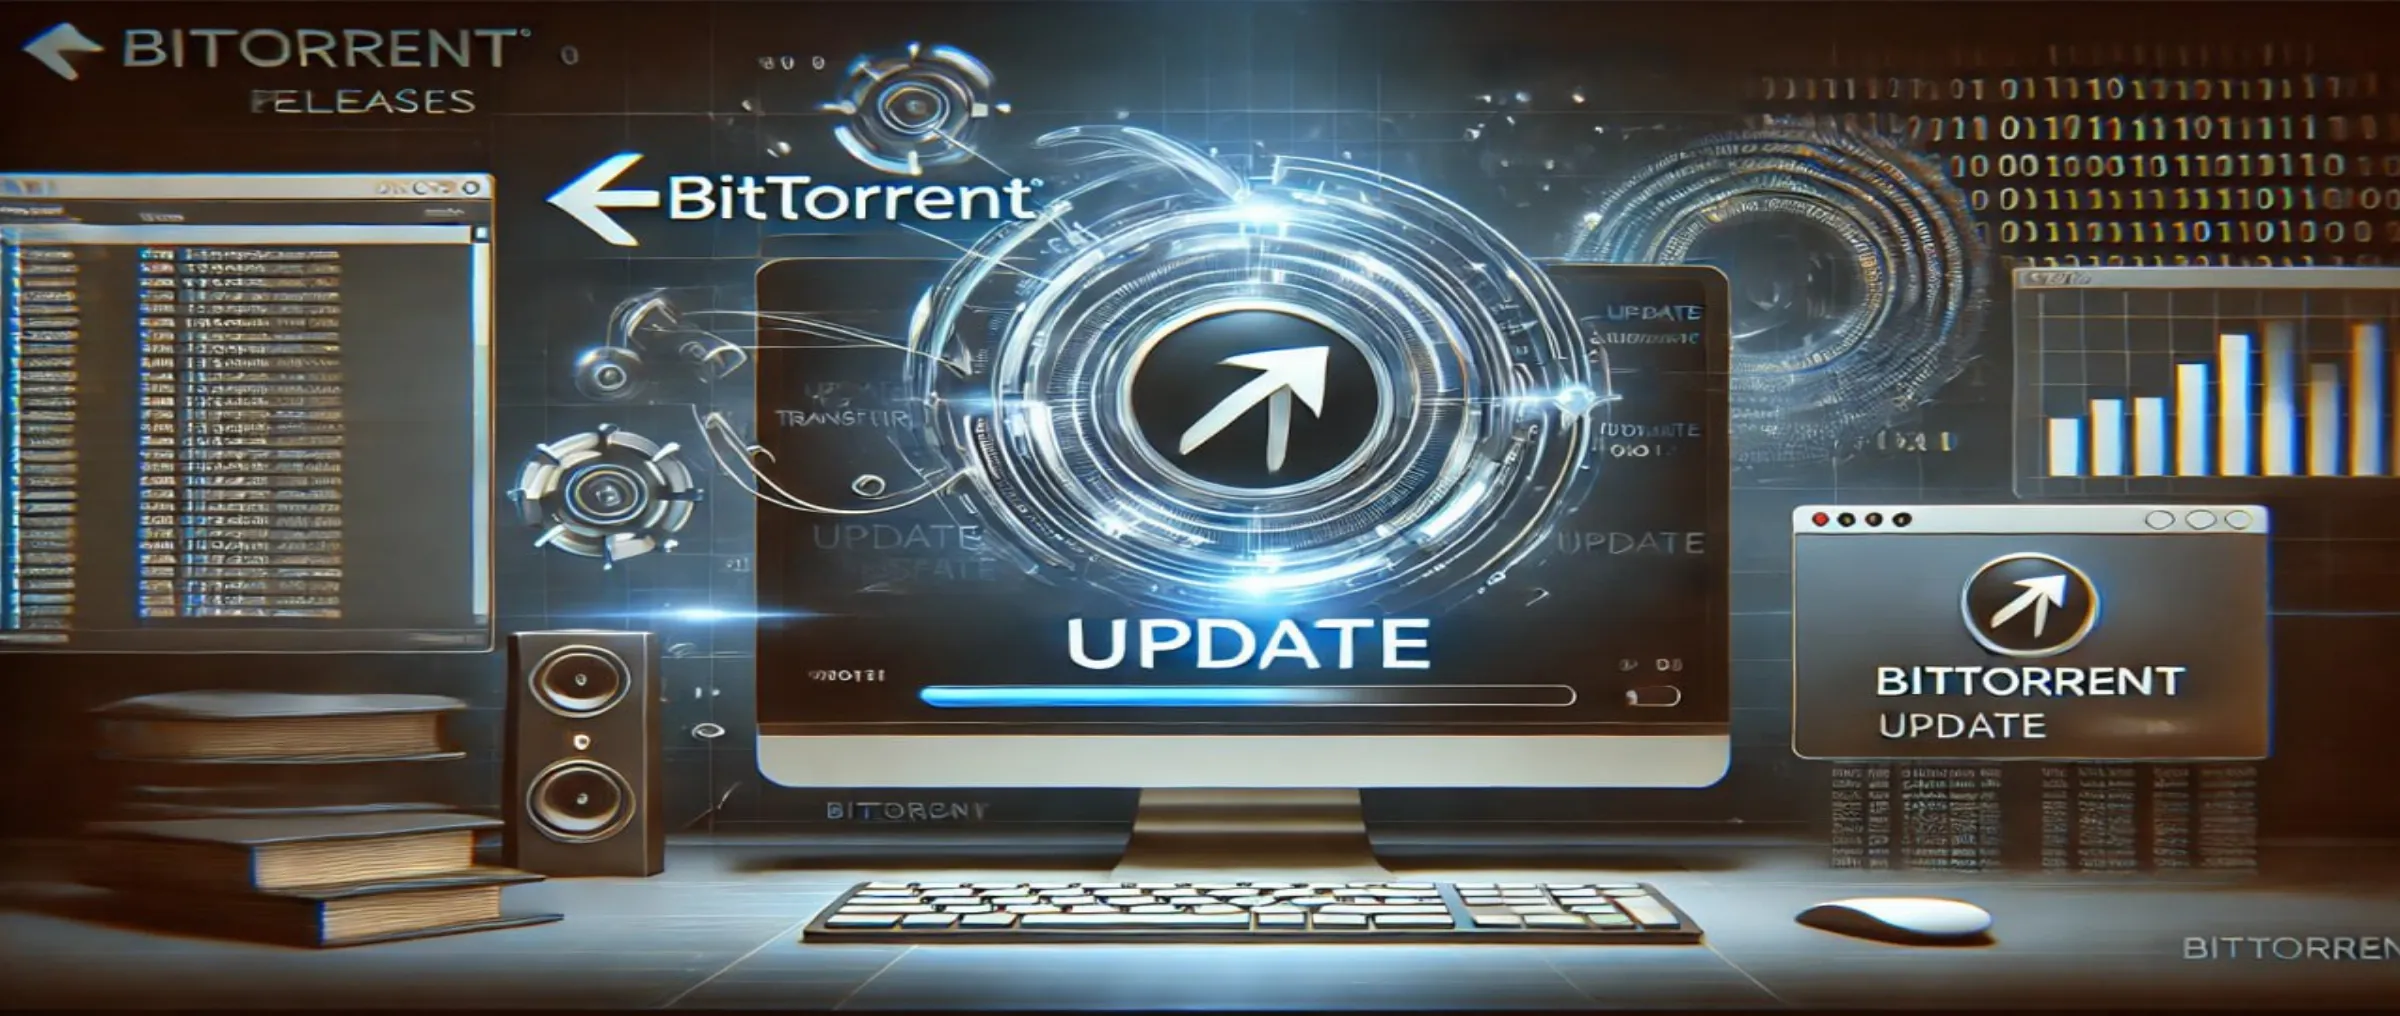 BitTorrent launches the BTFS V3.0 (Heisenberg) update on the mainnet